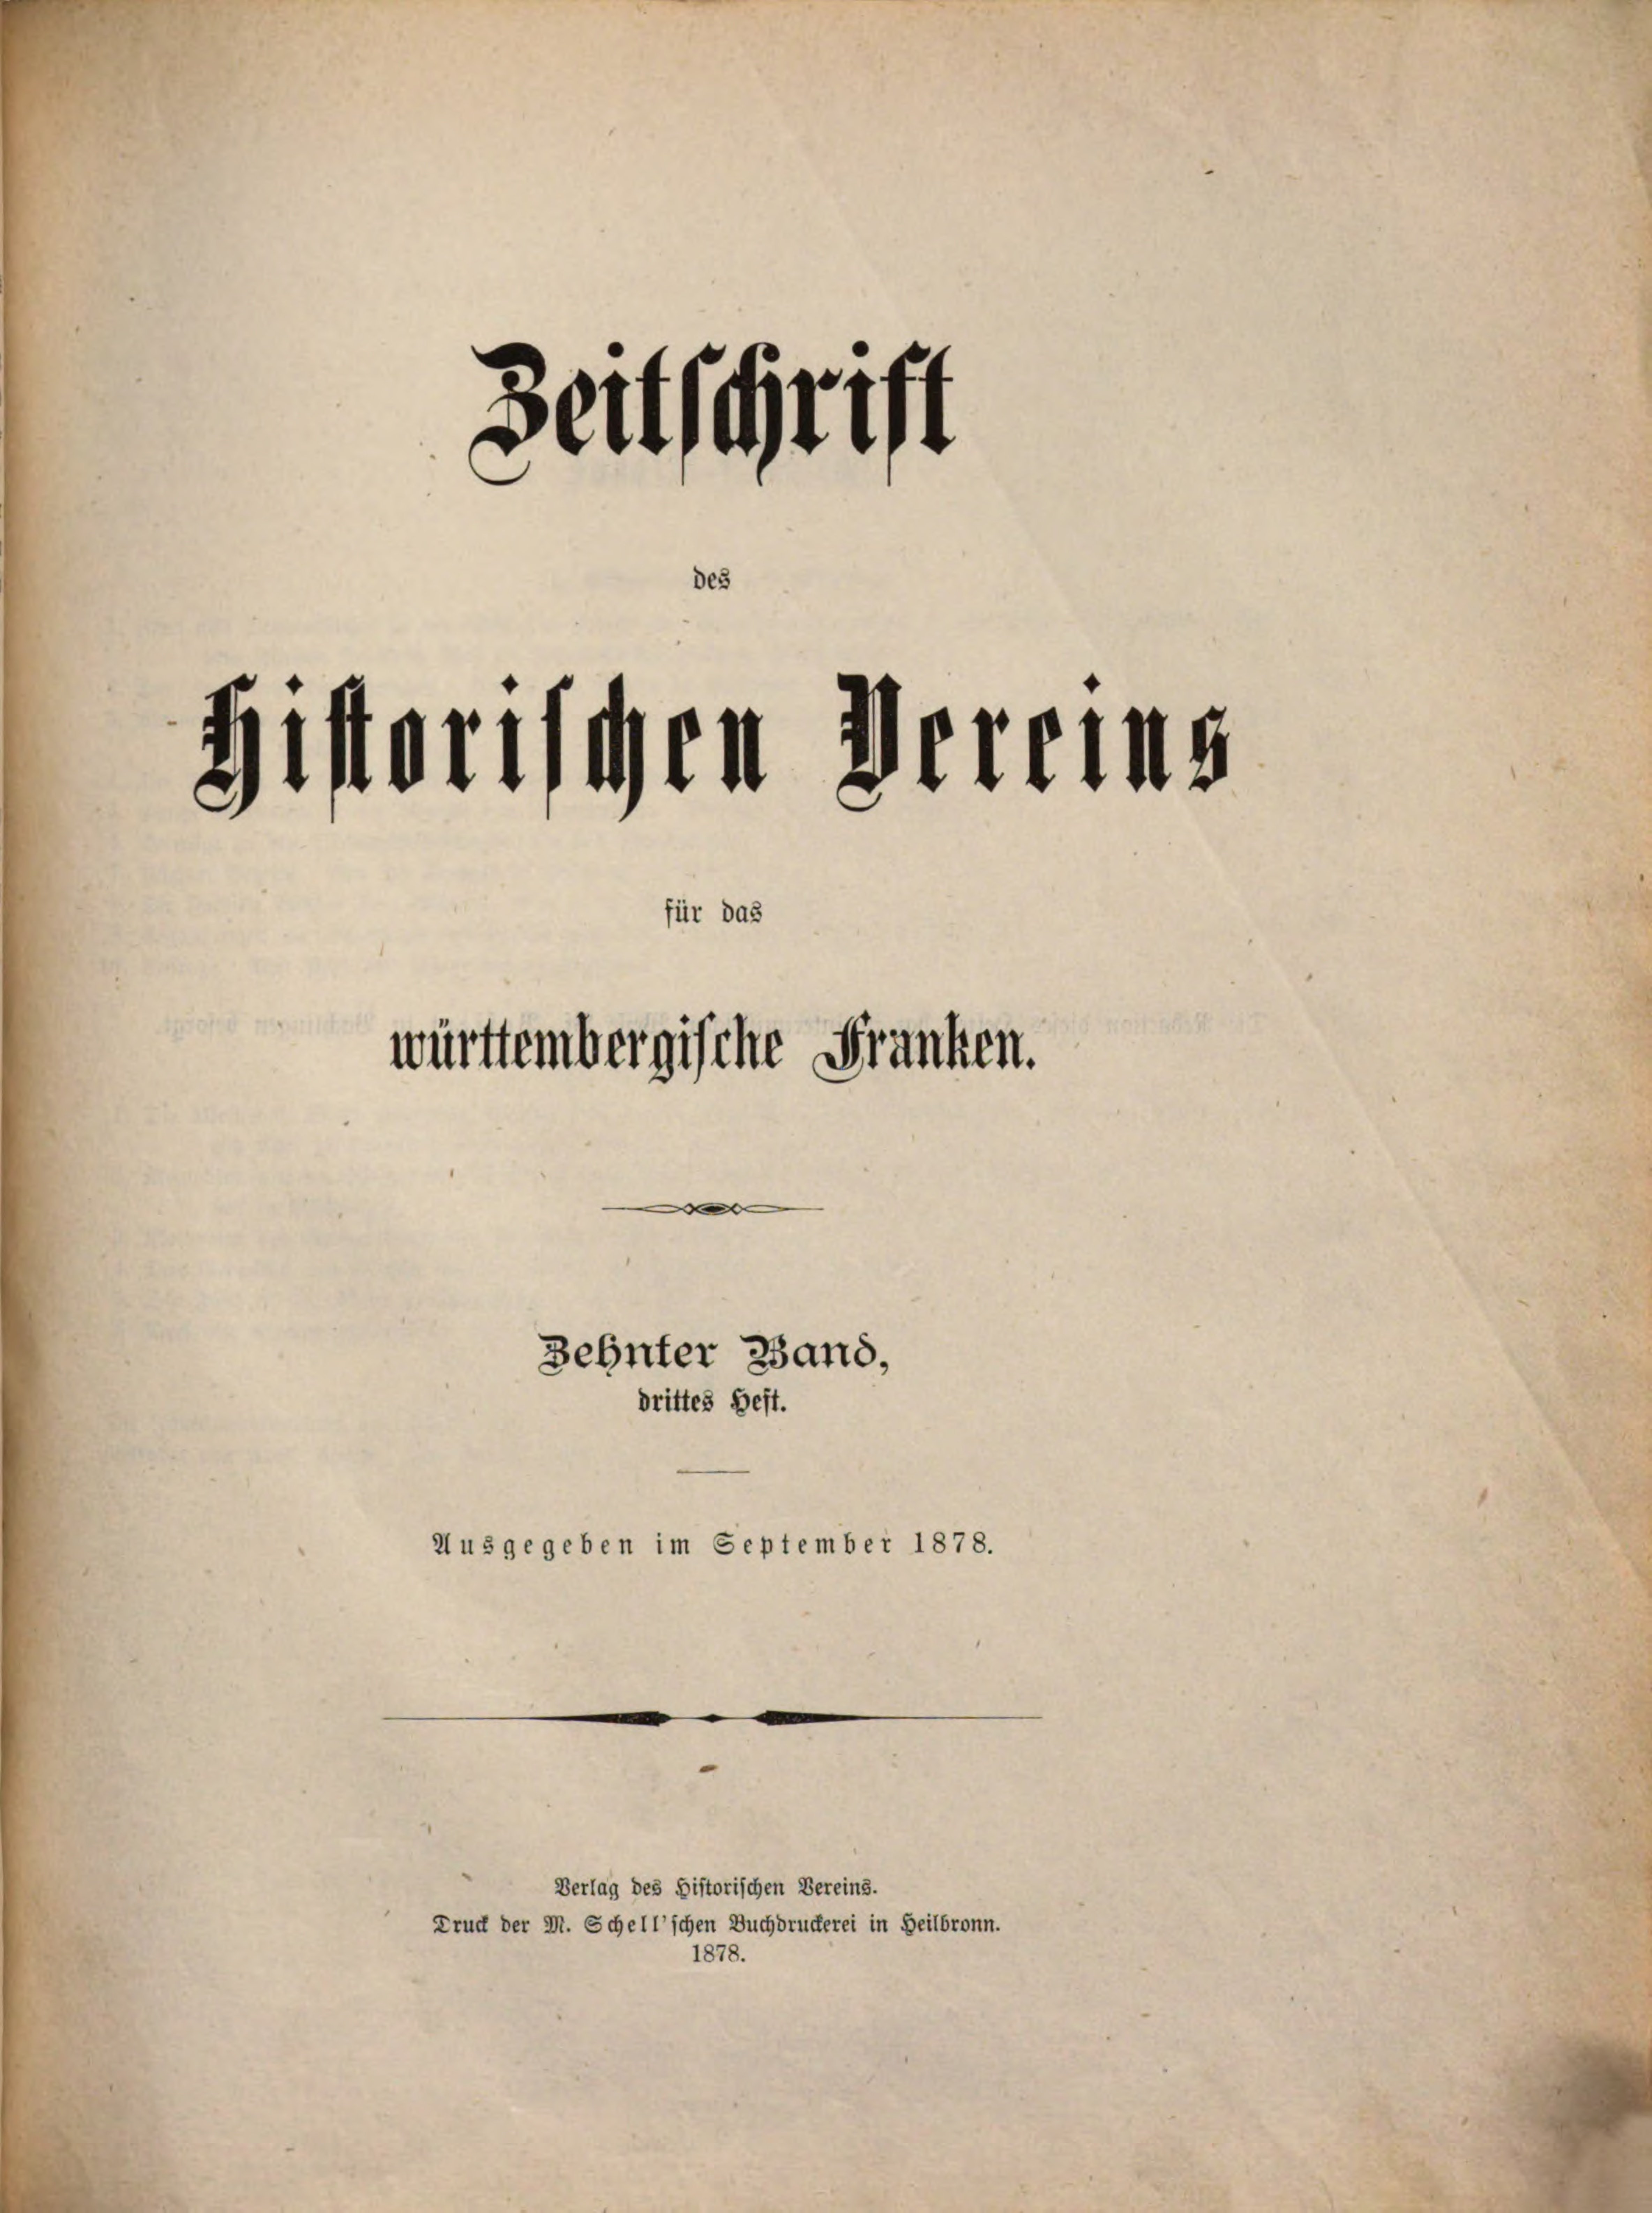 Titelbild der Zeitschrift des Historischen Vereins für das Württembergische Franken, Band 10, Nummer 3, 1878